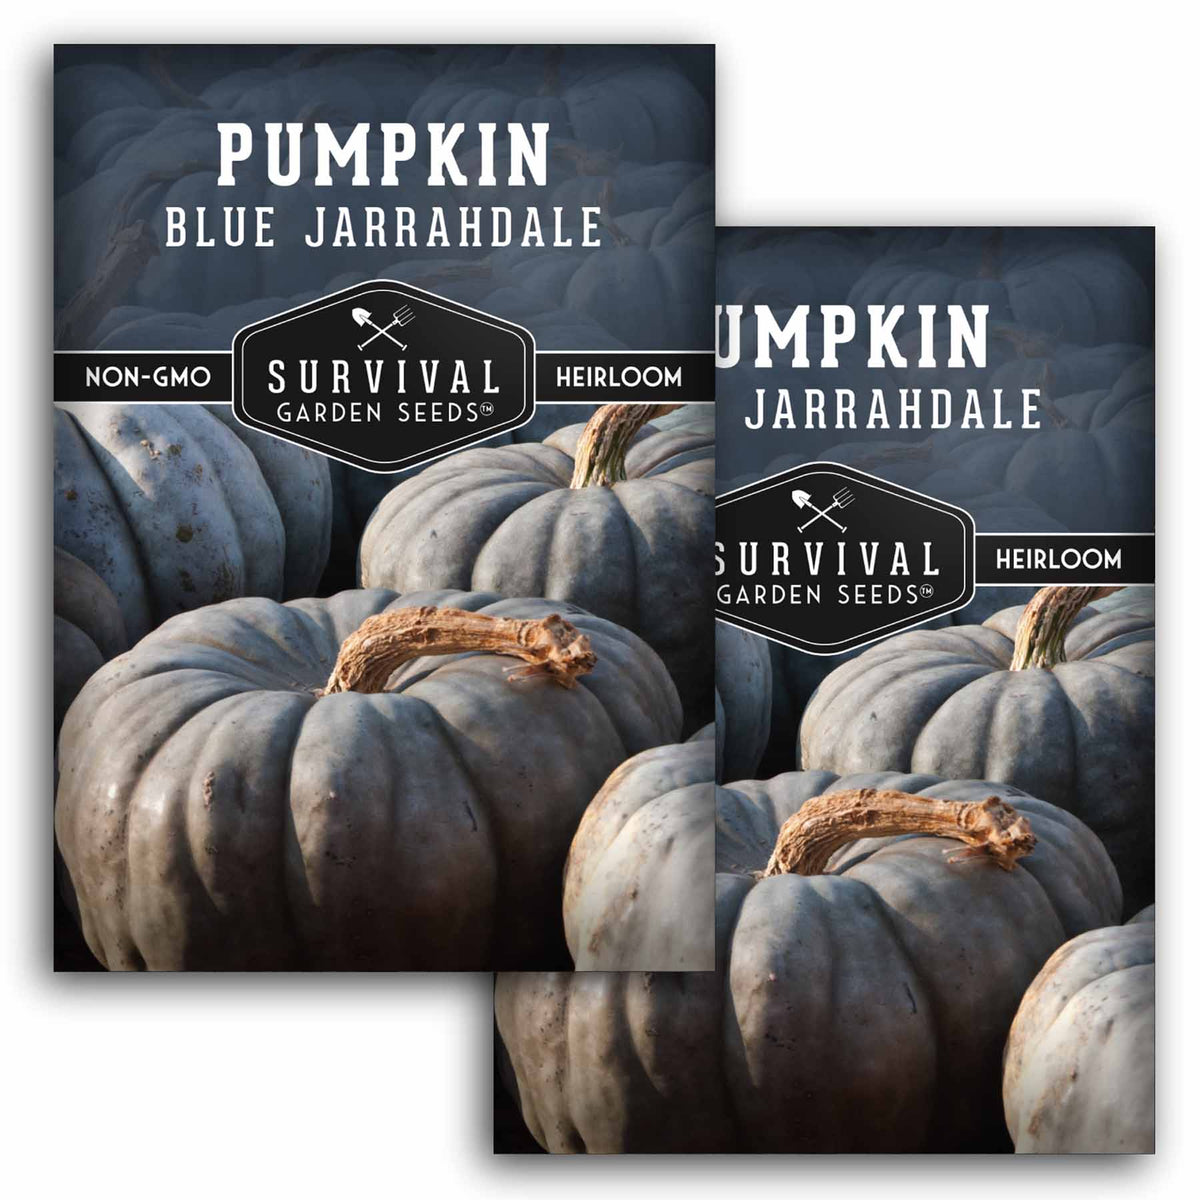 2 packets of Blue Jarrahdale Pumpkin seeds